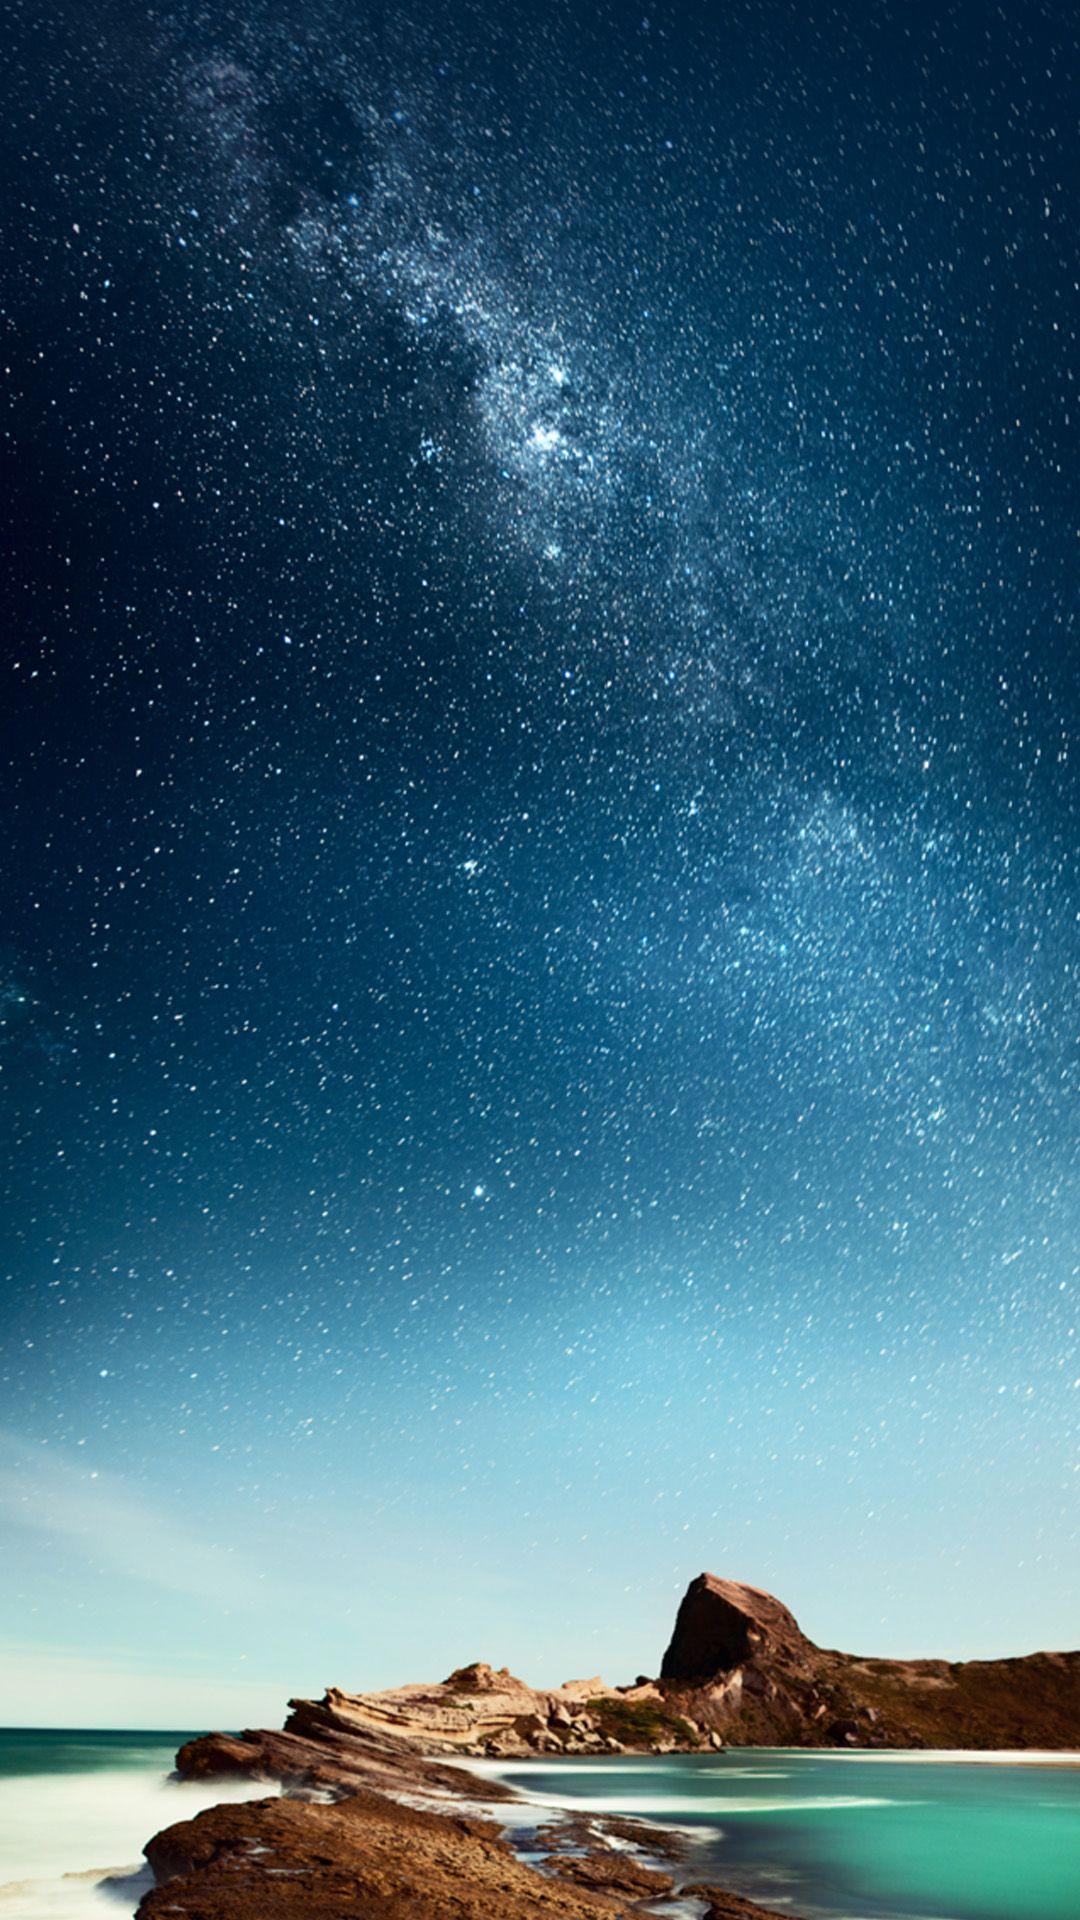 1080x1920 Hình nền iPhone của bầu trời đầy sao và bãi biển không gian